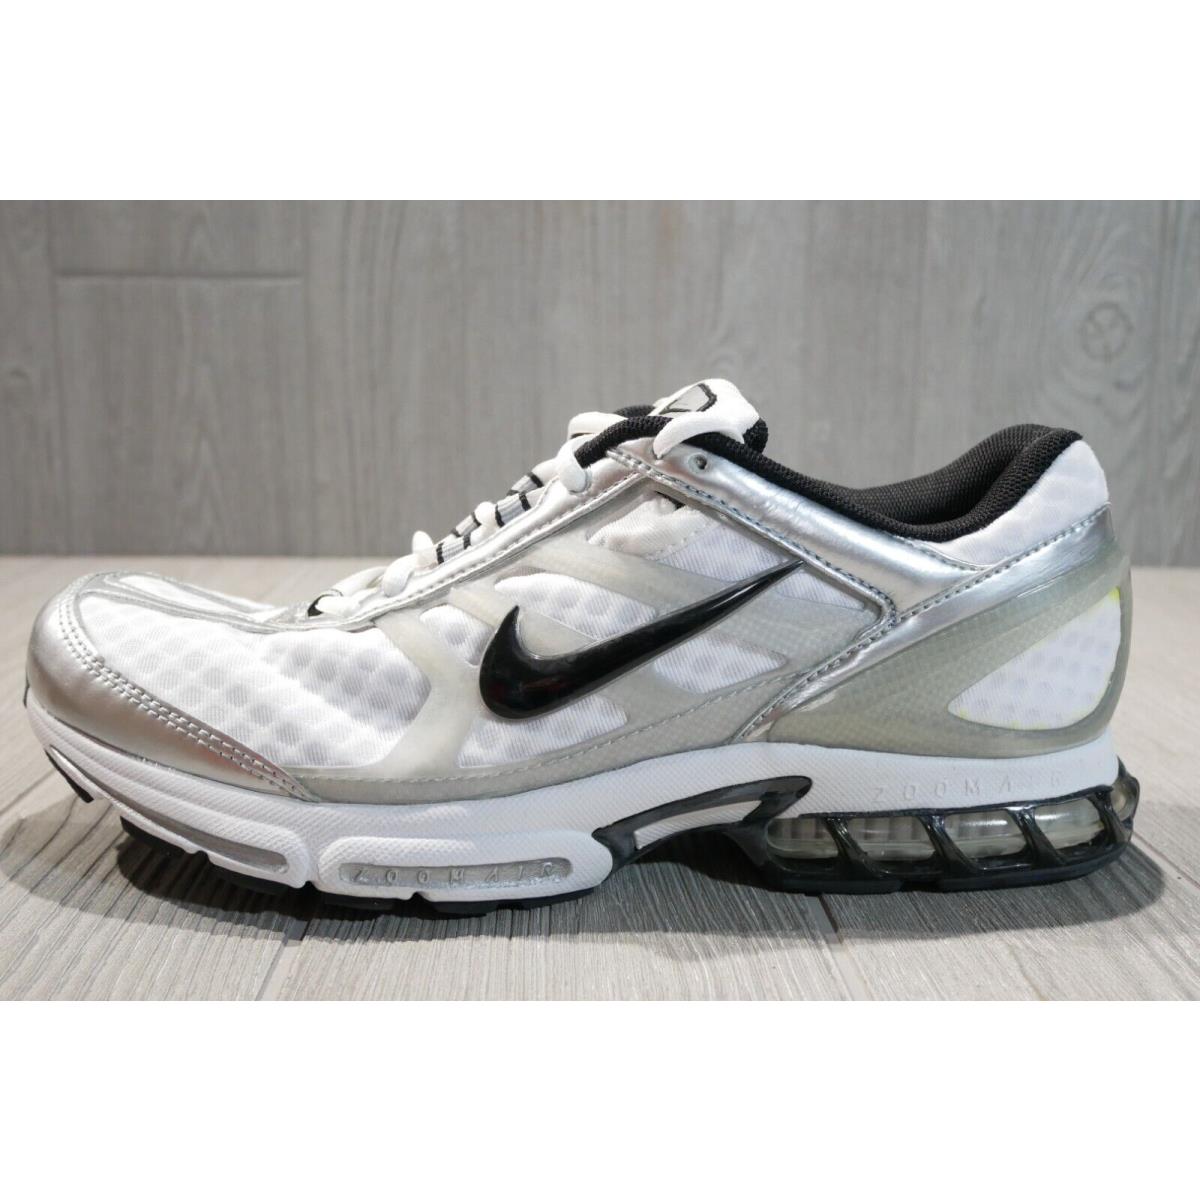 Vintage Nike Air Zoom Swift Vapor White Running Shoes 2004 Mens 12 Oss